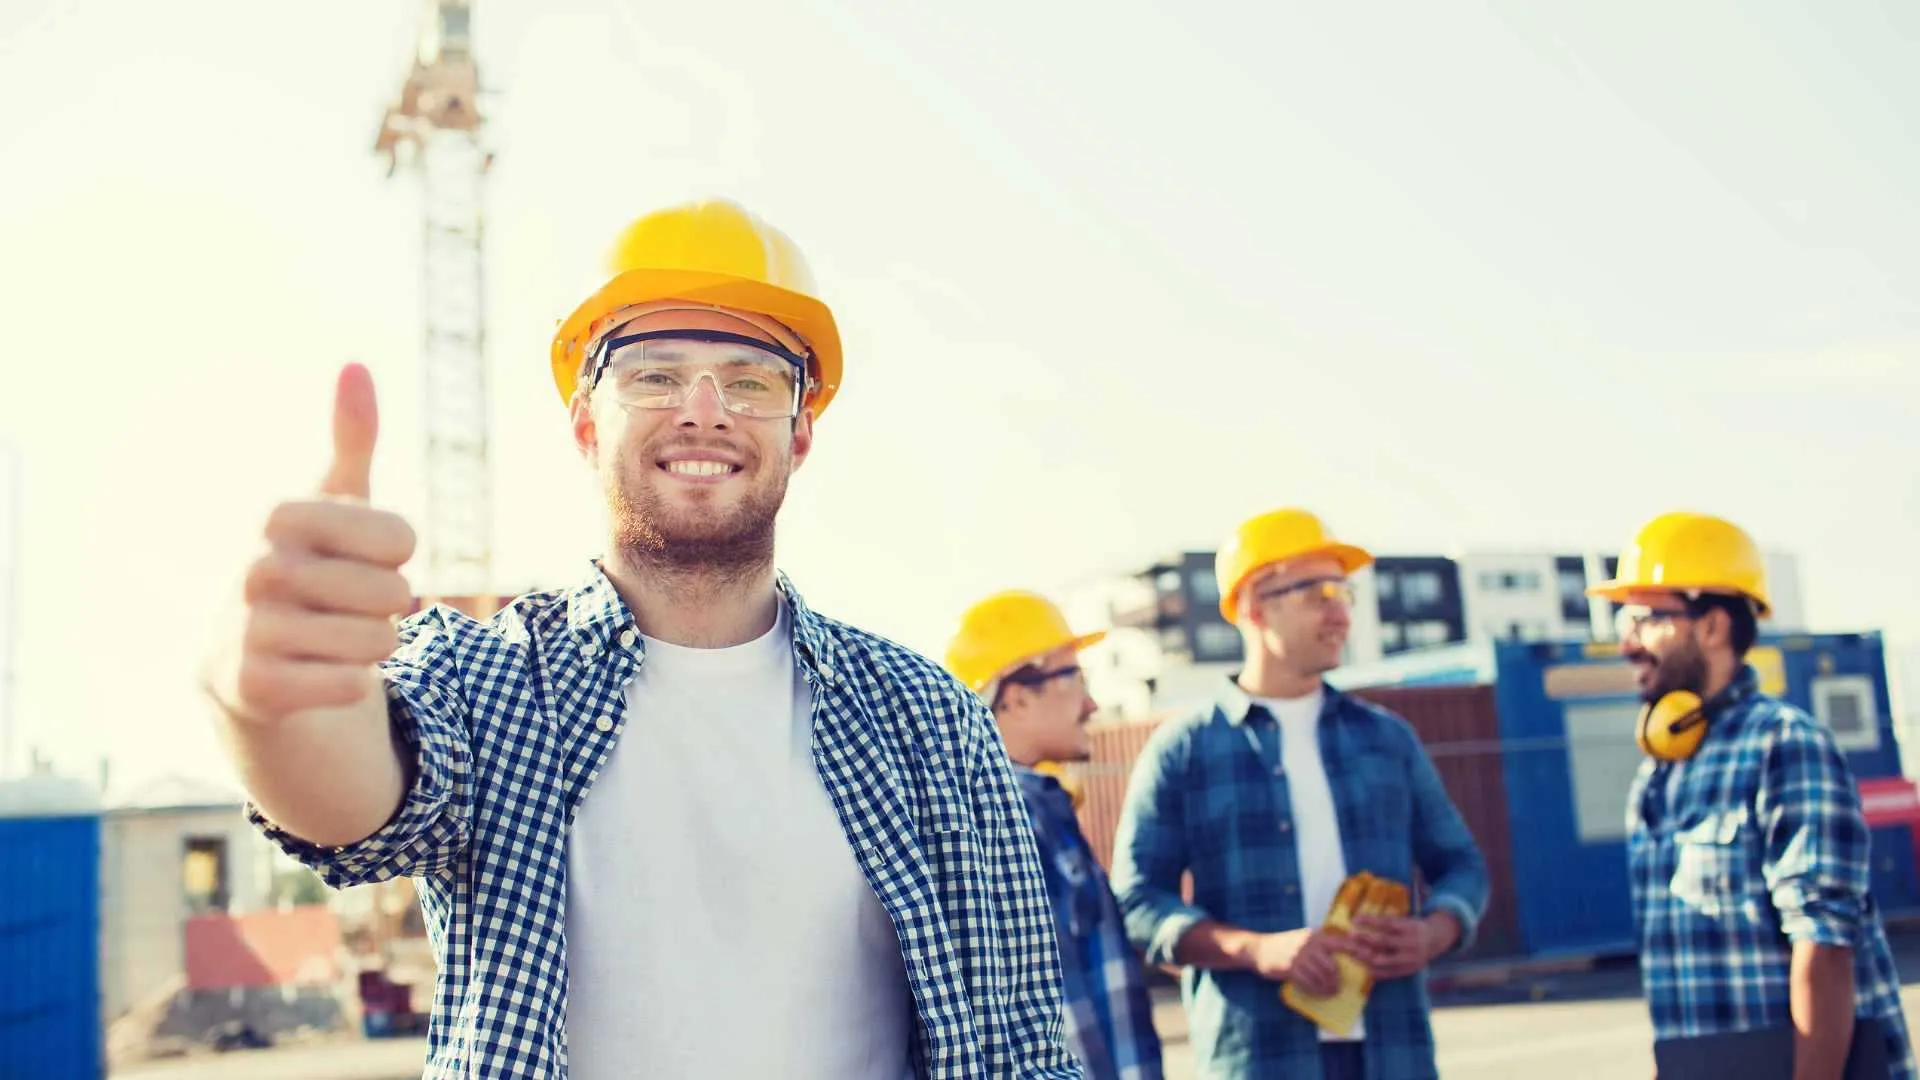 Een bouwvakker met gele helm en veiligheidsbril staat met zijn duim omhoog op een bouwplaats met een bouwkraan en drie collega's achter zich.